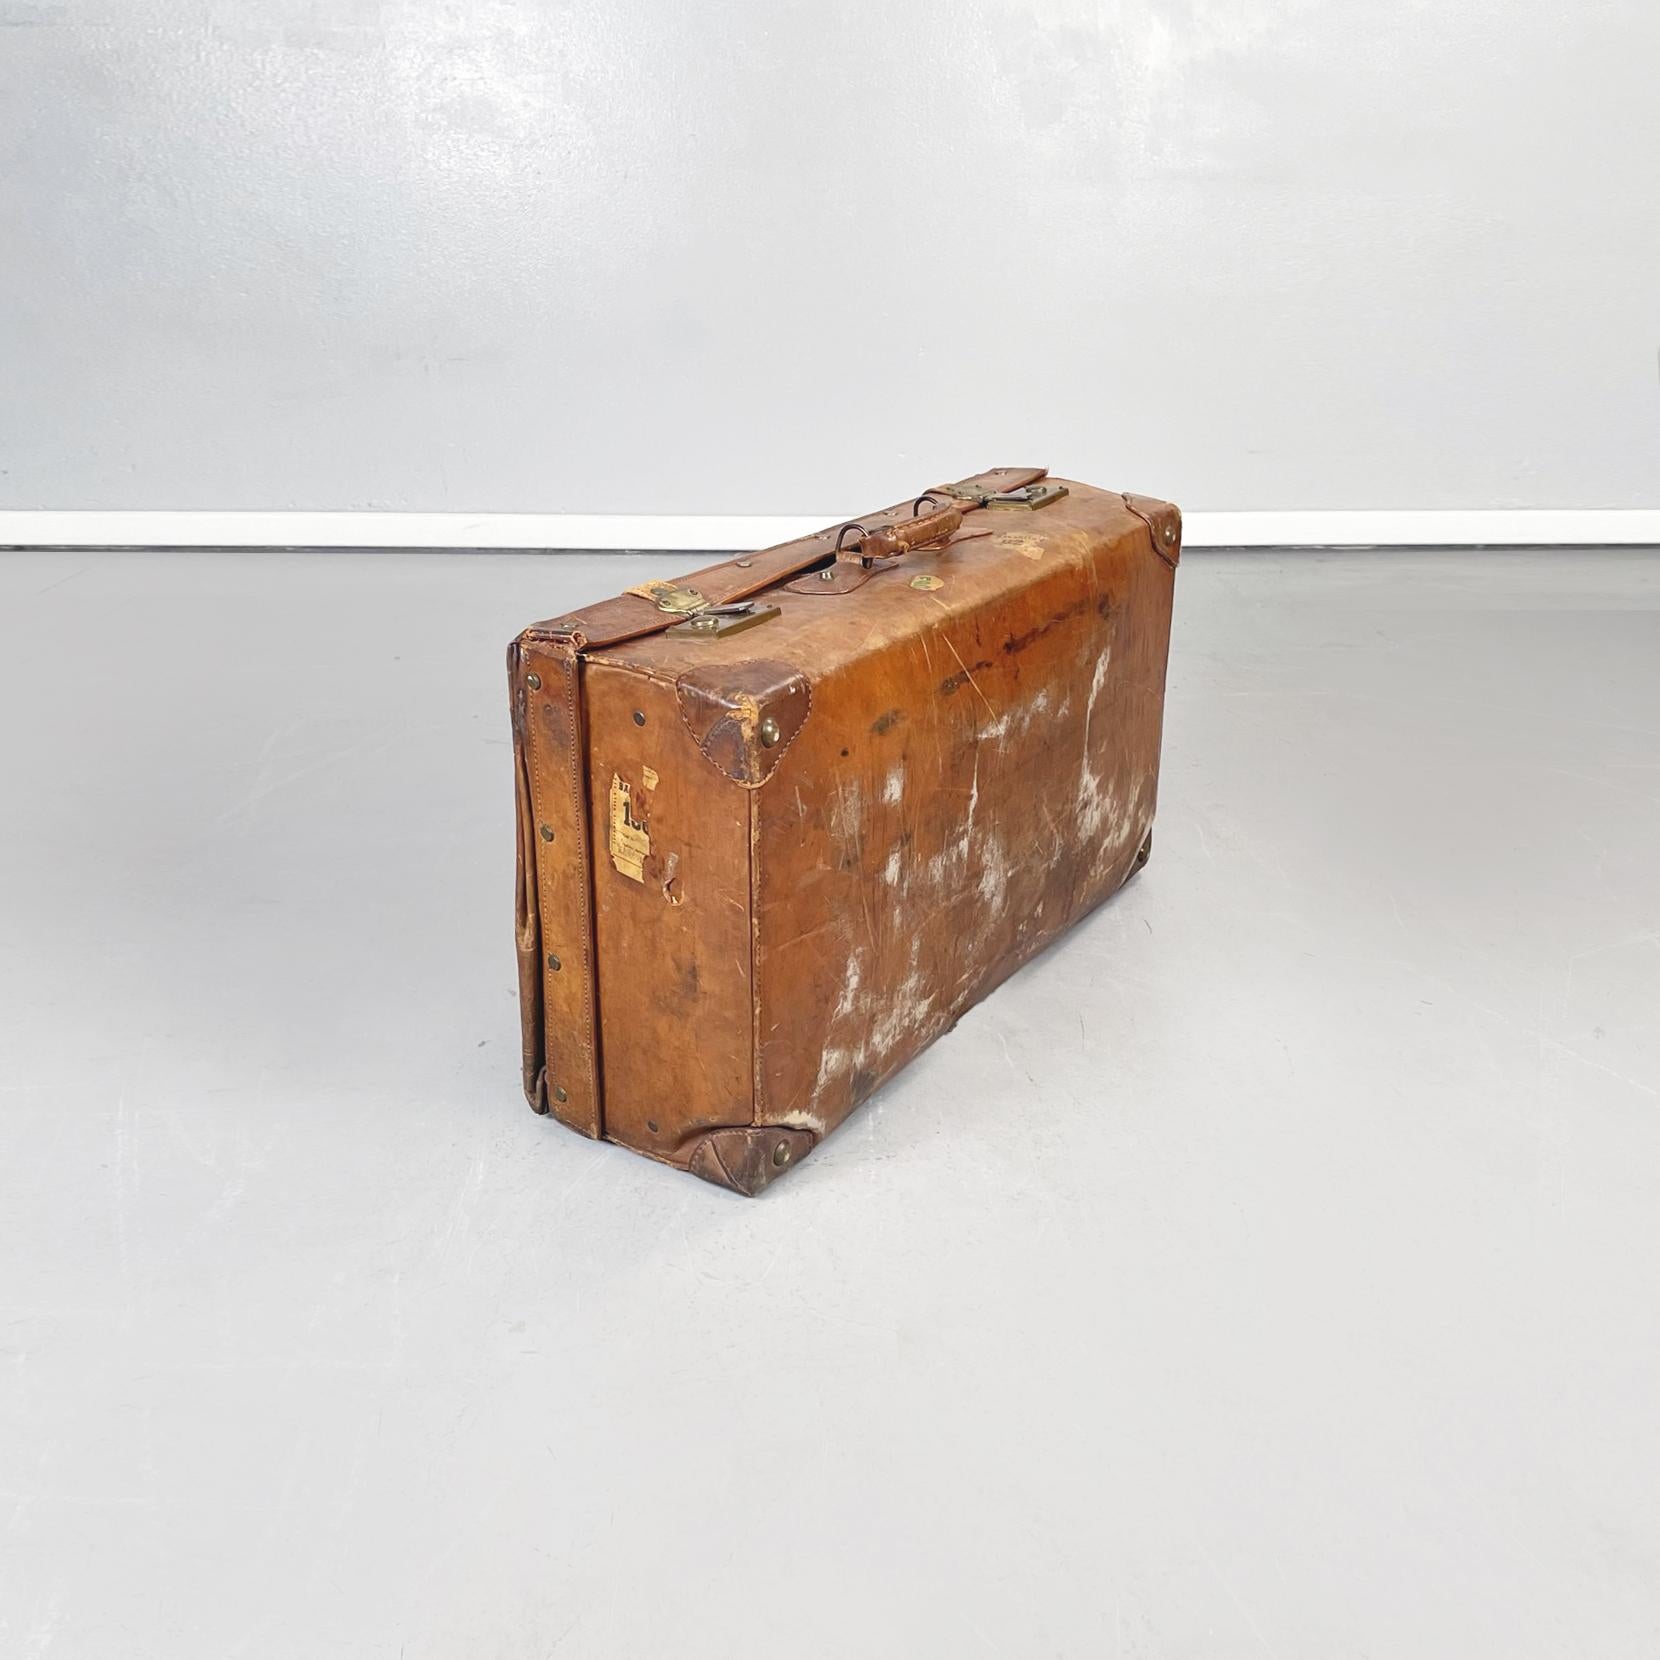 Italienischer Mid-Century Modern Koffer aus braunem Leder mit beigem Stoff, 1960er Jahre
Rechteckiger Koffer aus hellbraunem Leder mit Aufklebern. Metallverschluss, Griff vorhanden. Innenausstattung aus beigem Stoff mit zwei Fächern, eines davon